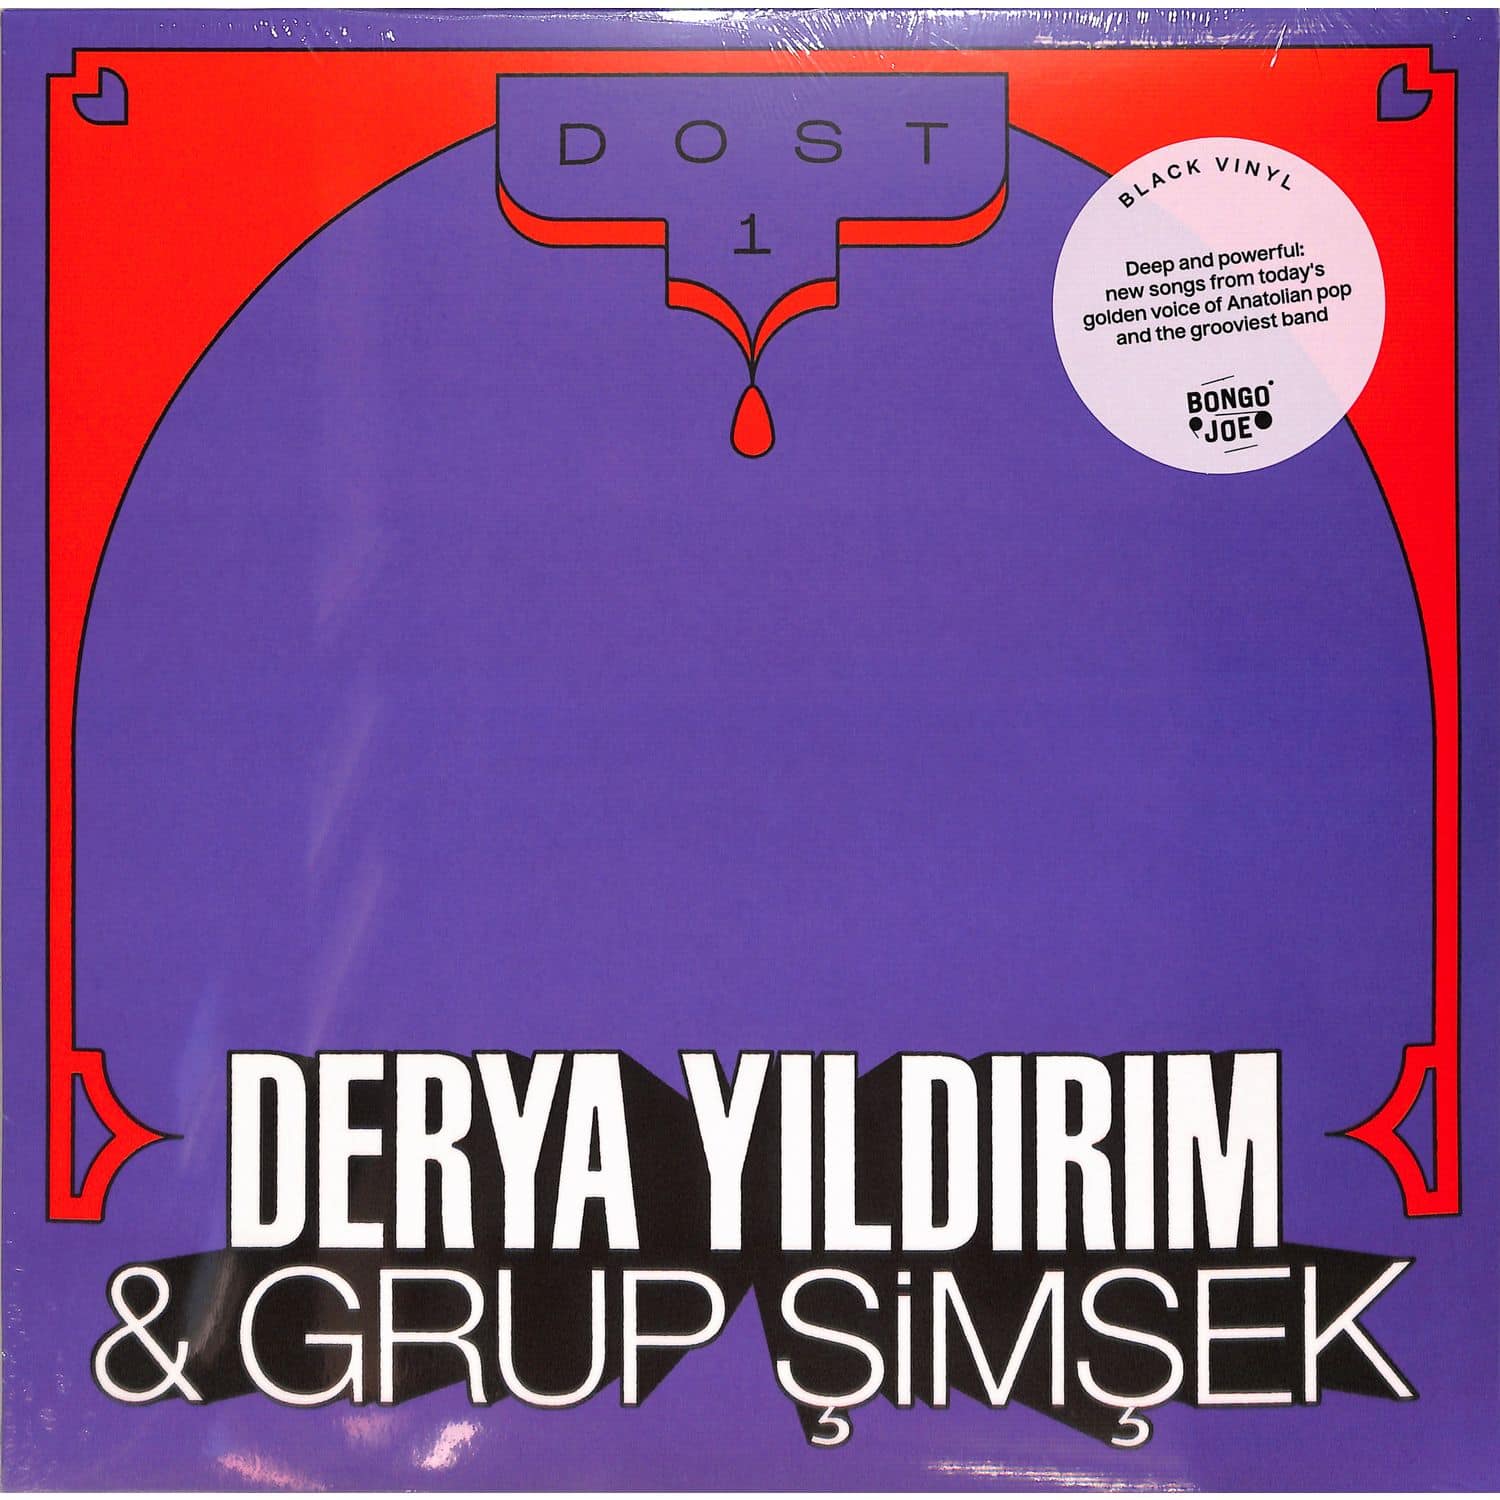 Derya Yildirim & Grup Simsek - DOST 1 